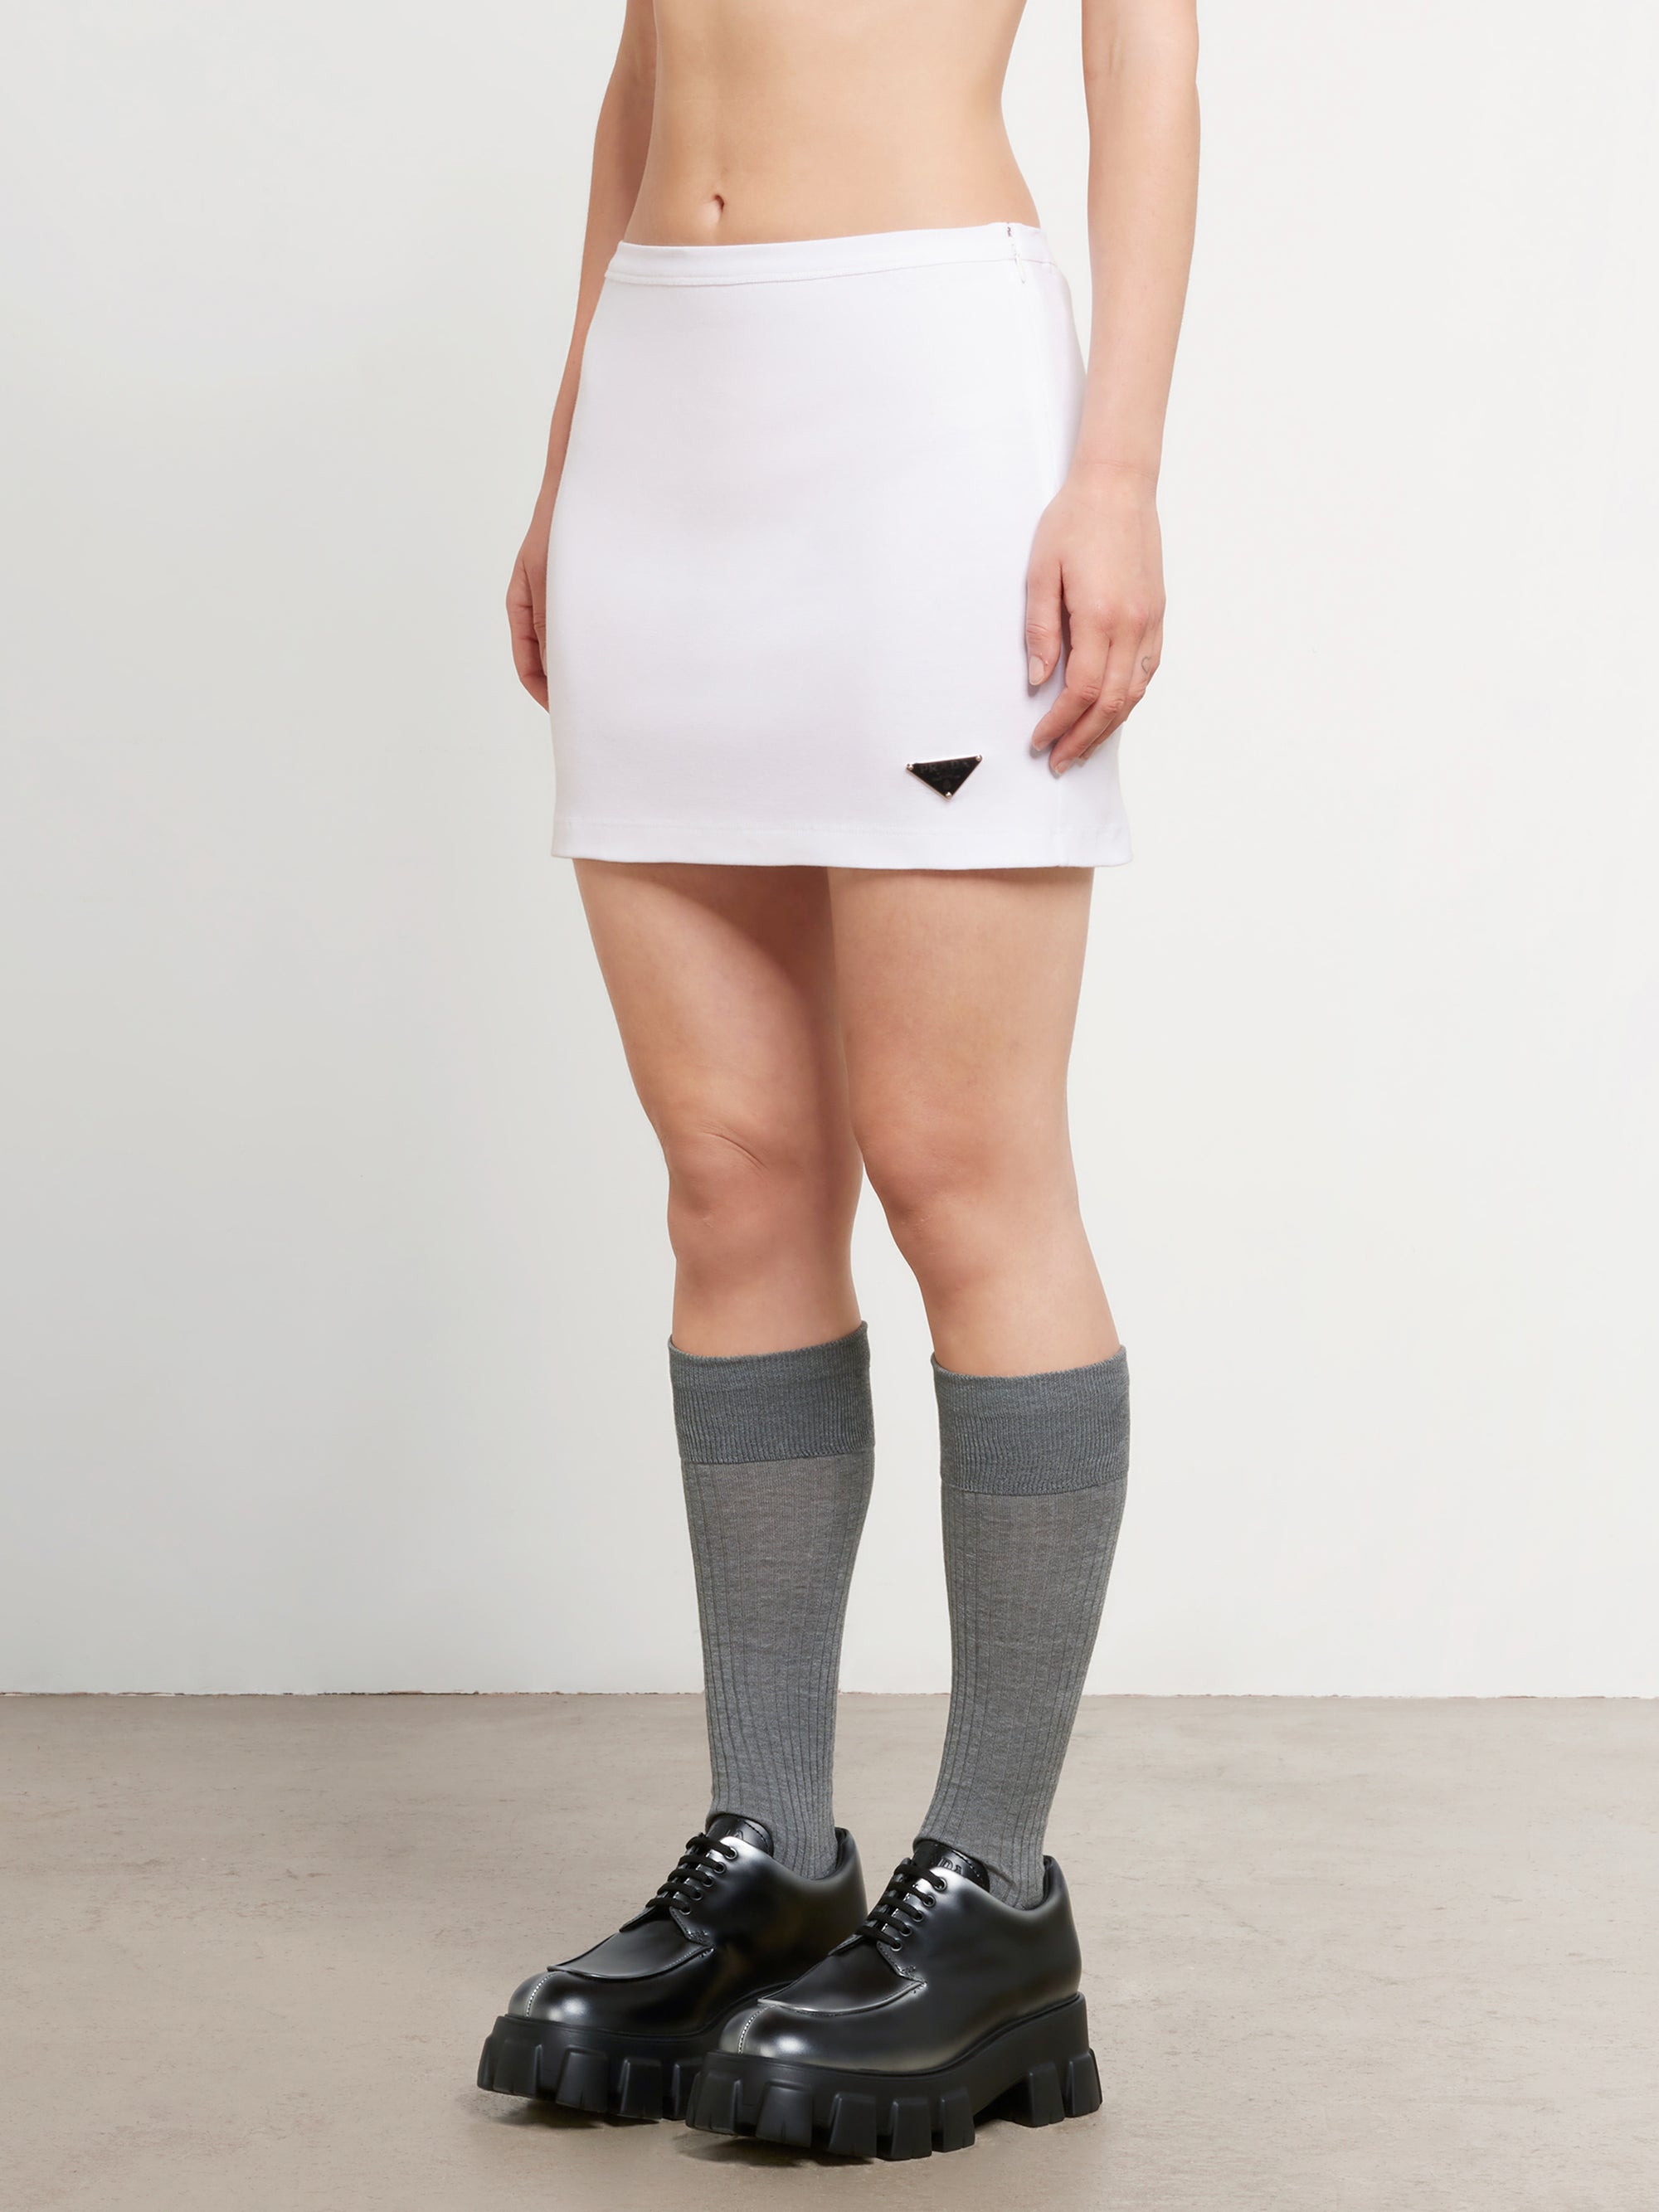 Prada - Women’s Jersey Miniskirt - (White) view 2